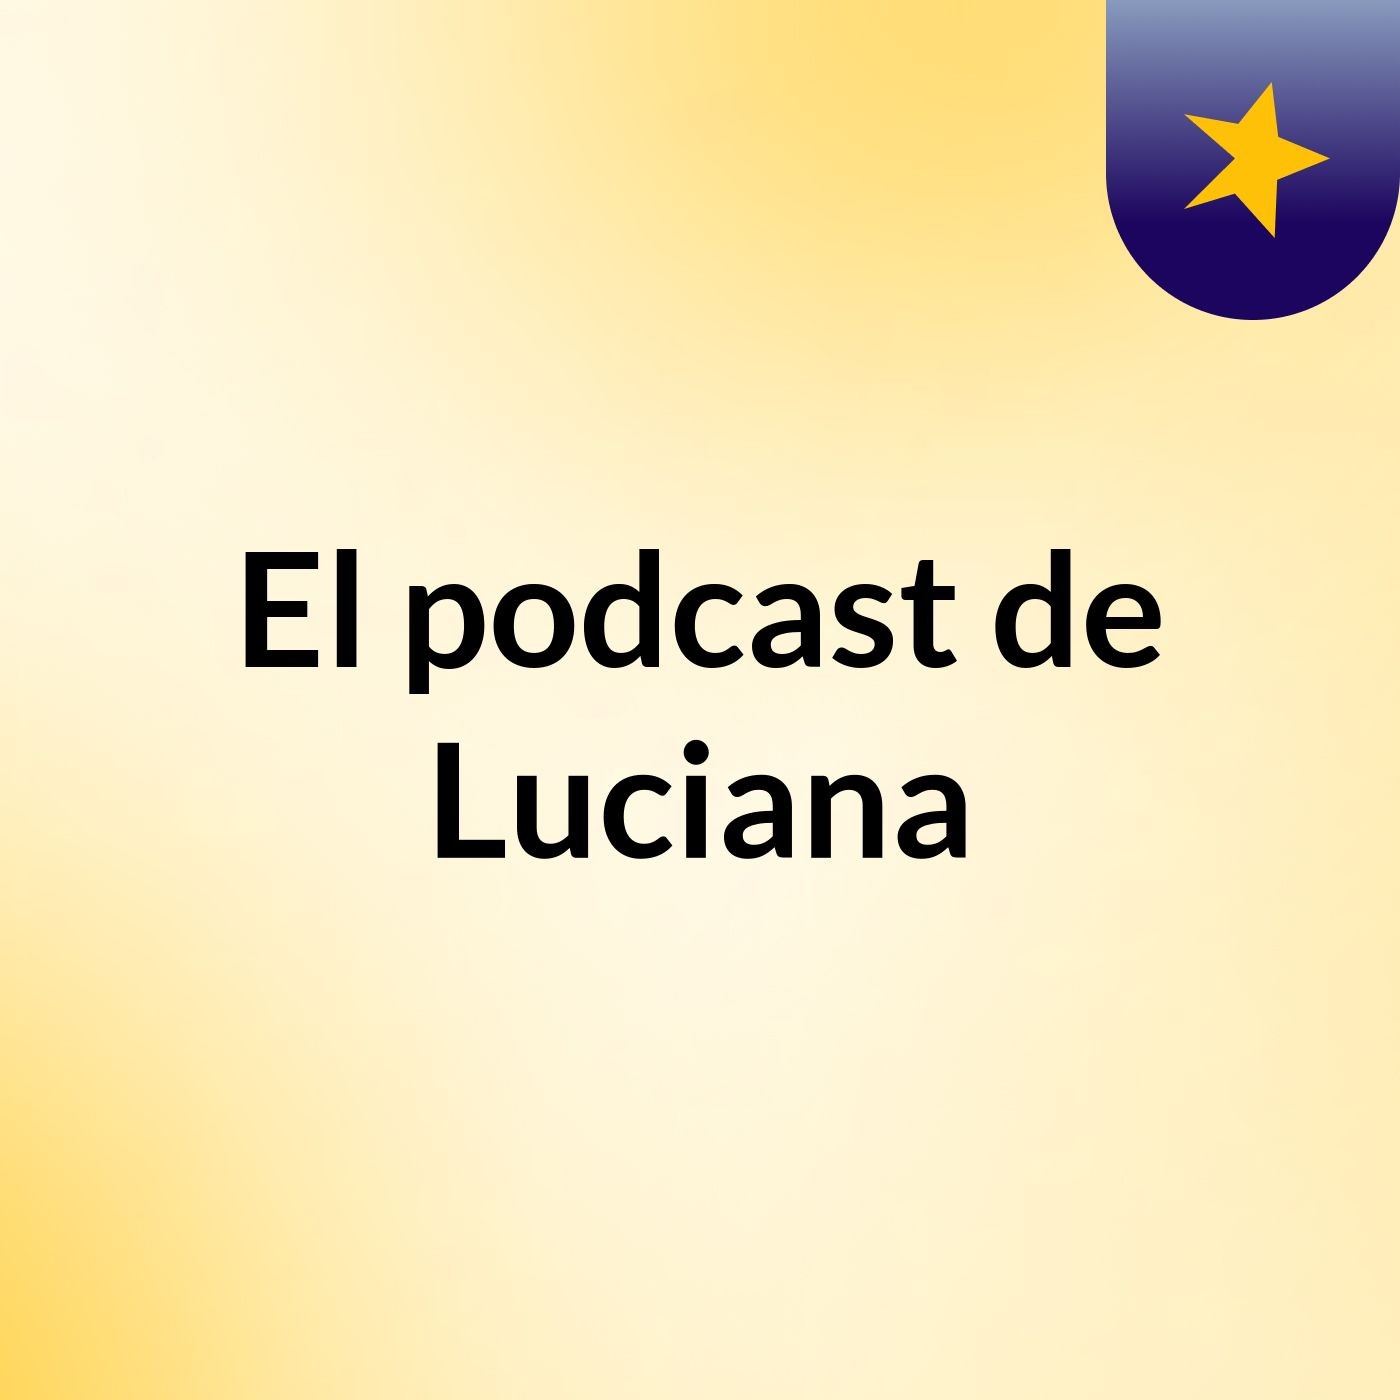 El podcast de Luciana